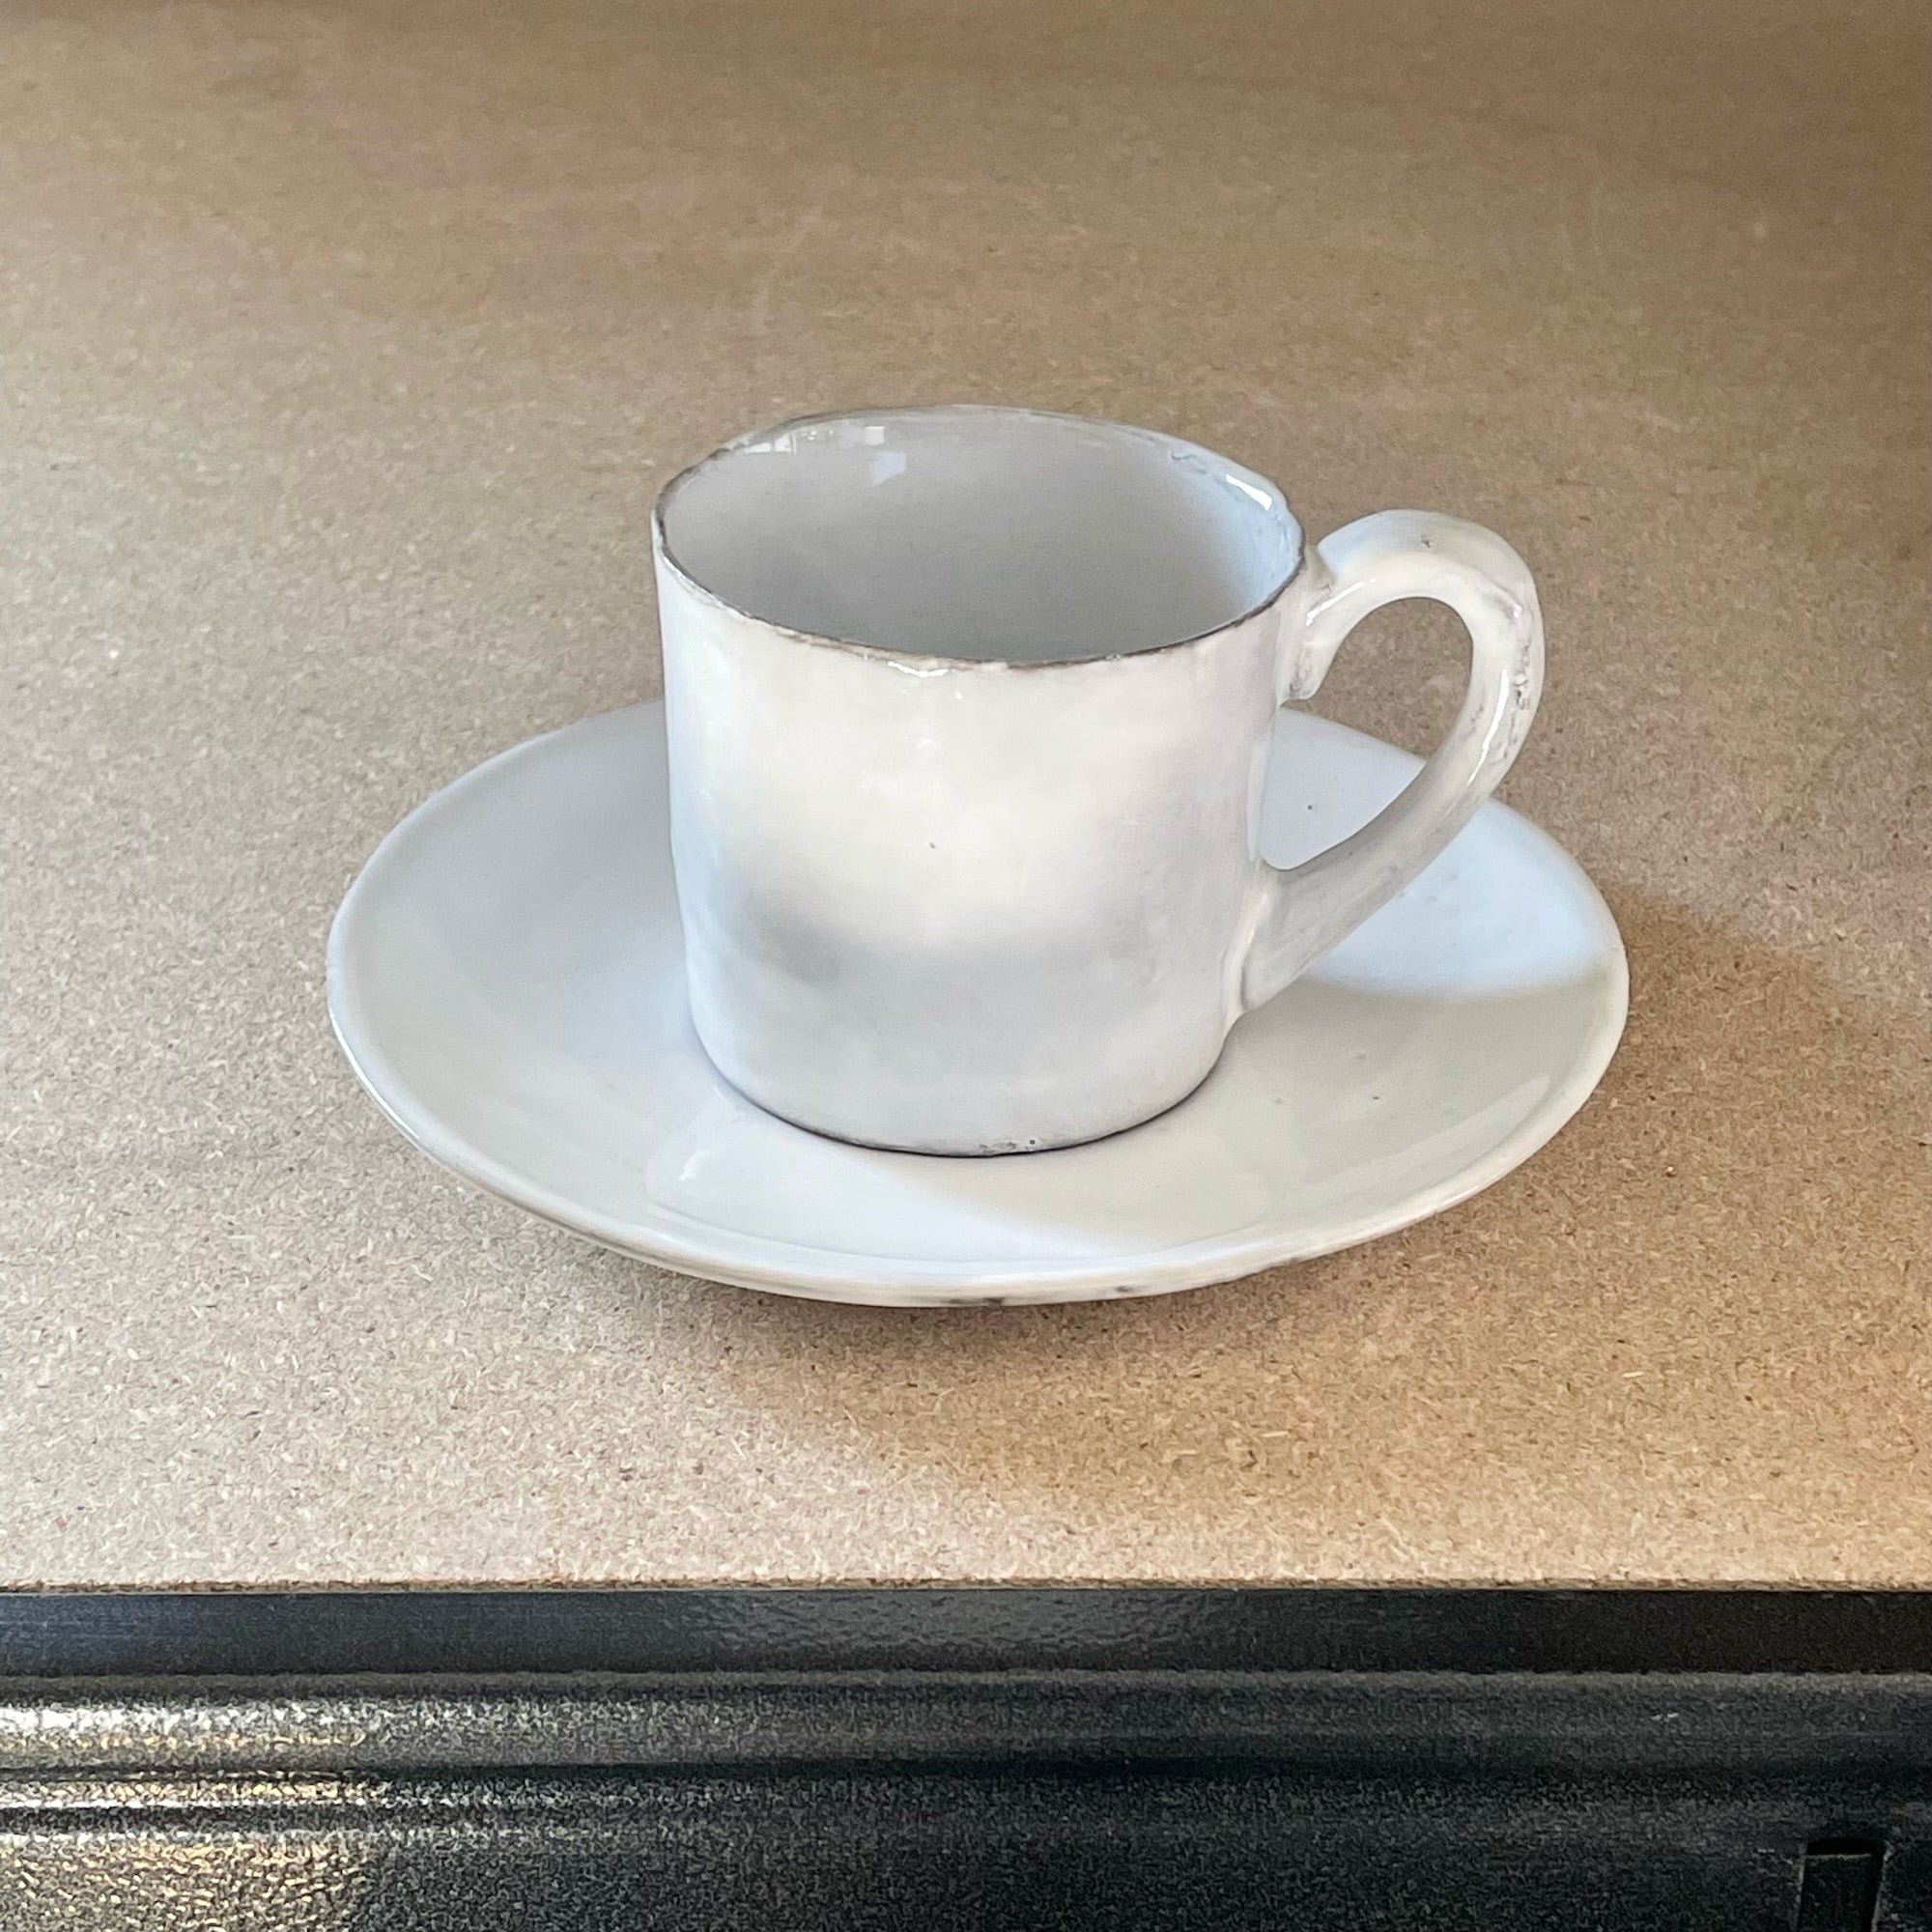 Small mug and saucer